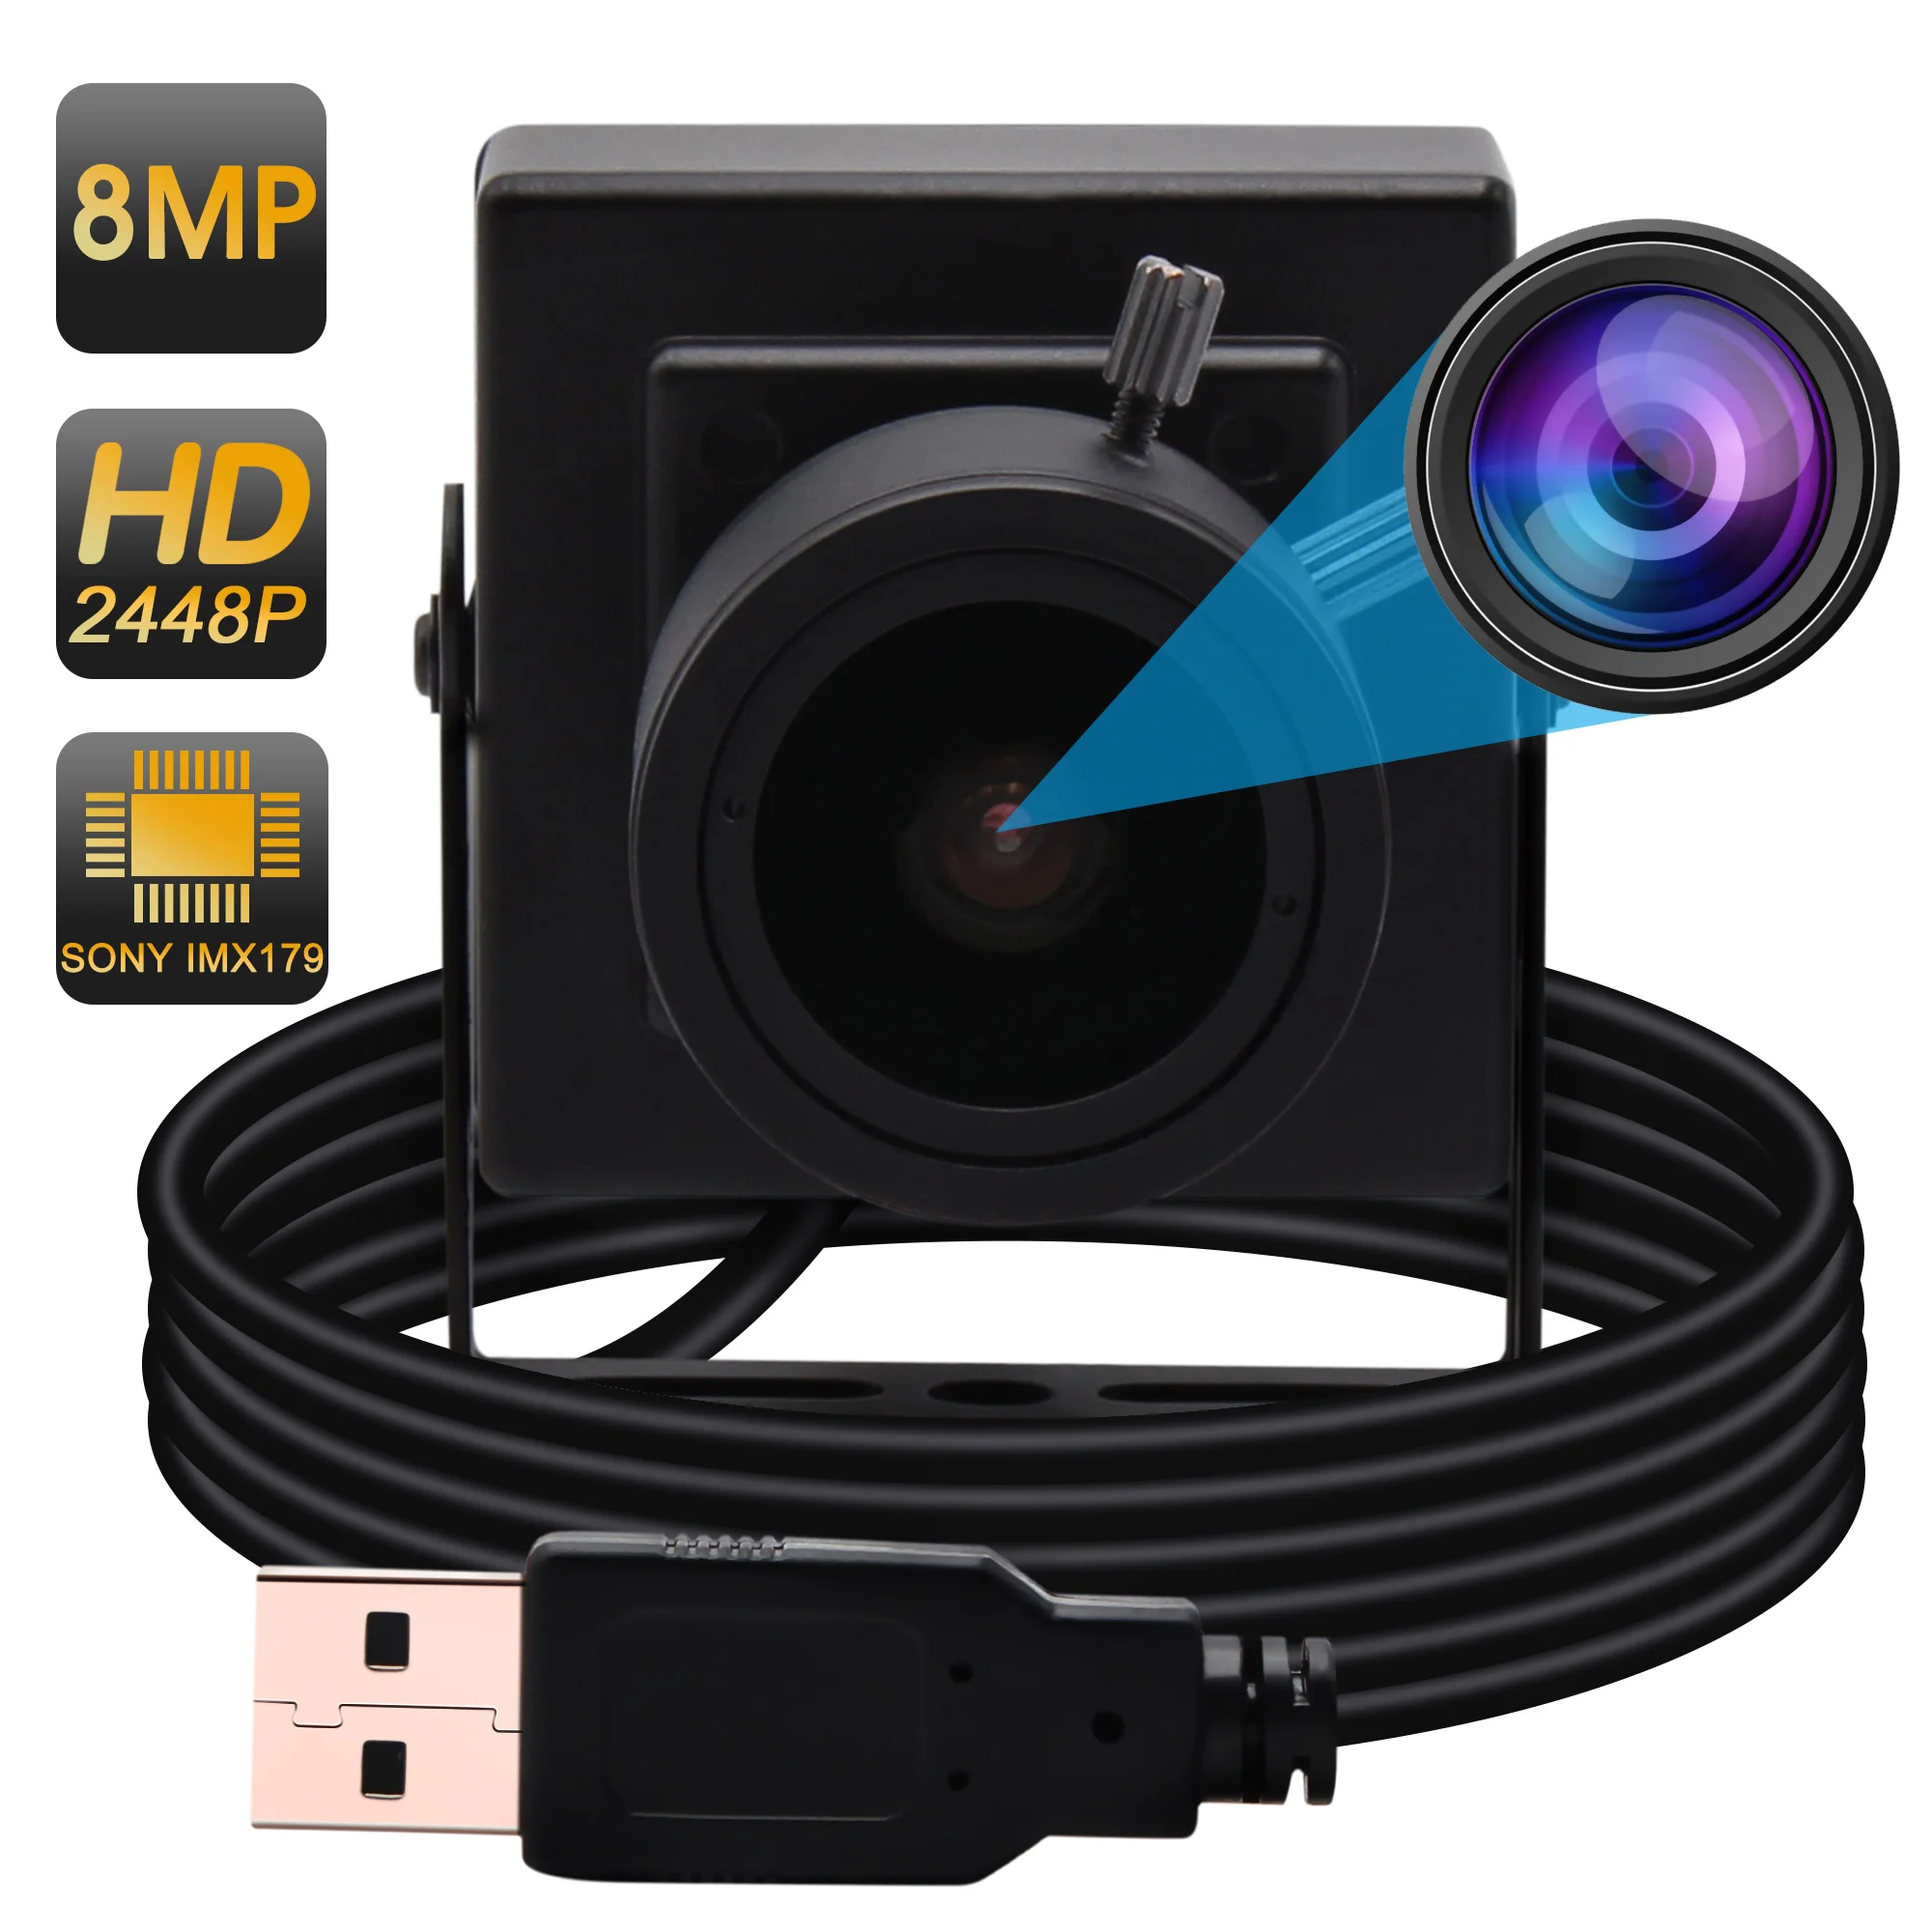 

Новая USB веб-камера высокого разрешения 8 Мп Мини HD Android/Linux/Windows 2,8-12 мм объектив с вариофокальным ручным зумом промышленная камера USB